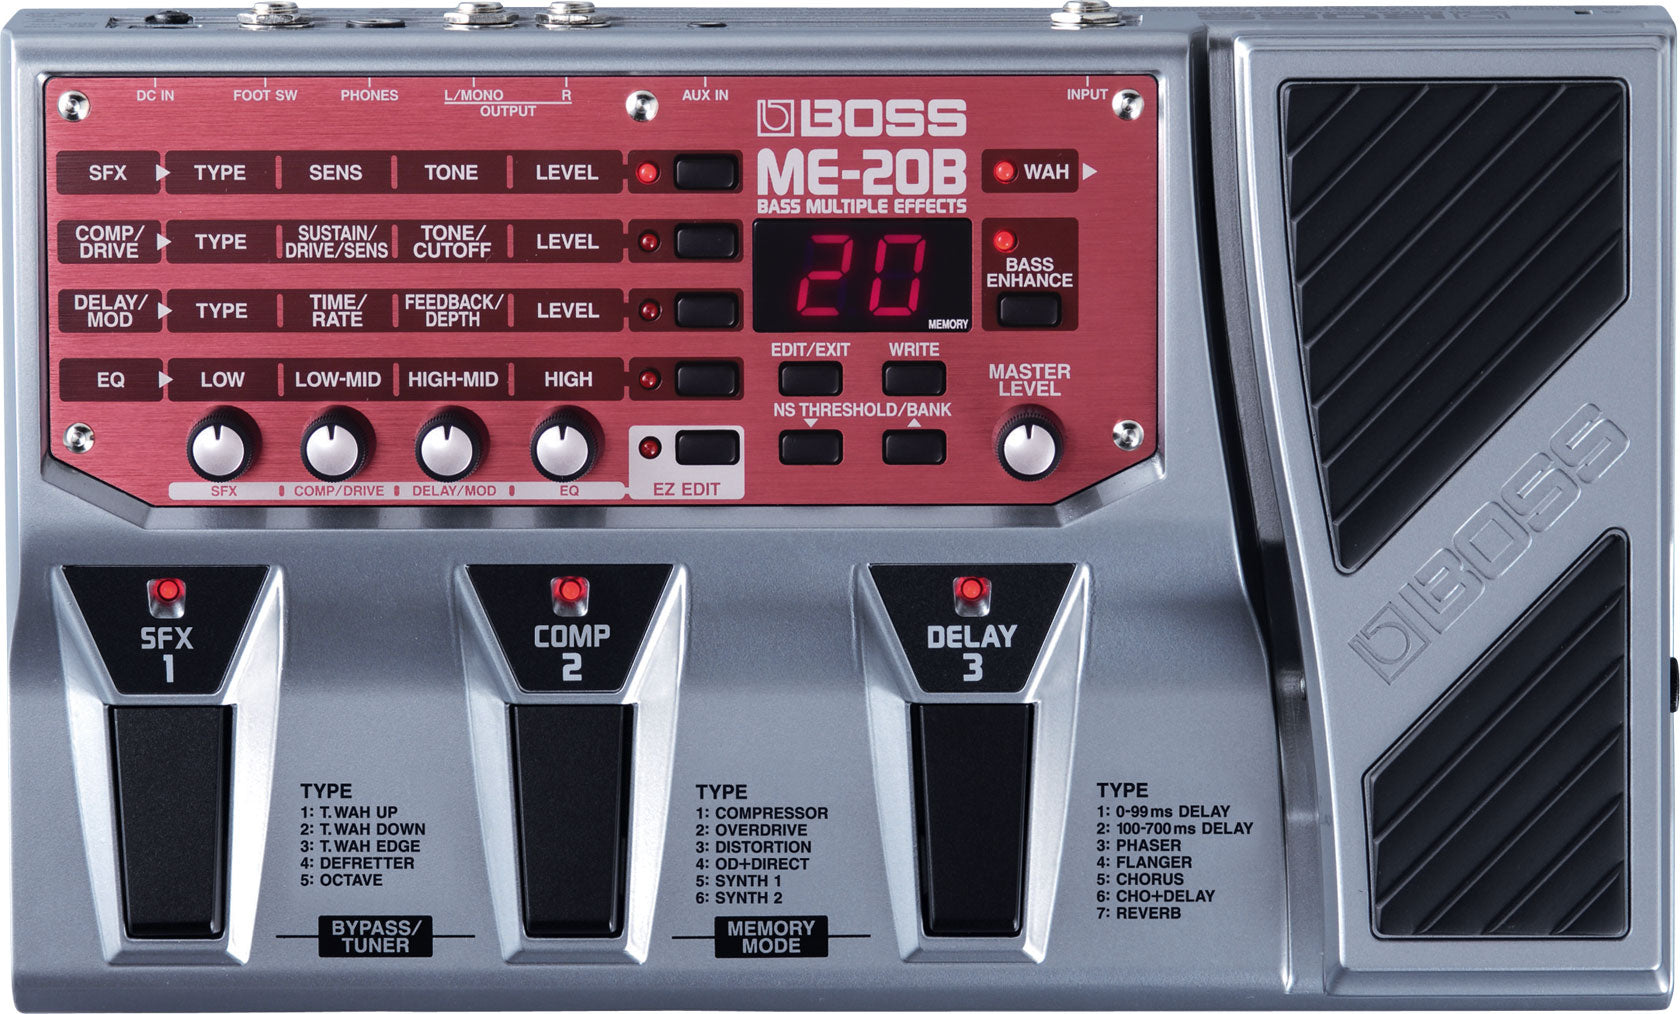 BOSS ME-20B Bass Multiple Effects 低音結他效果器